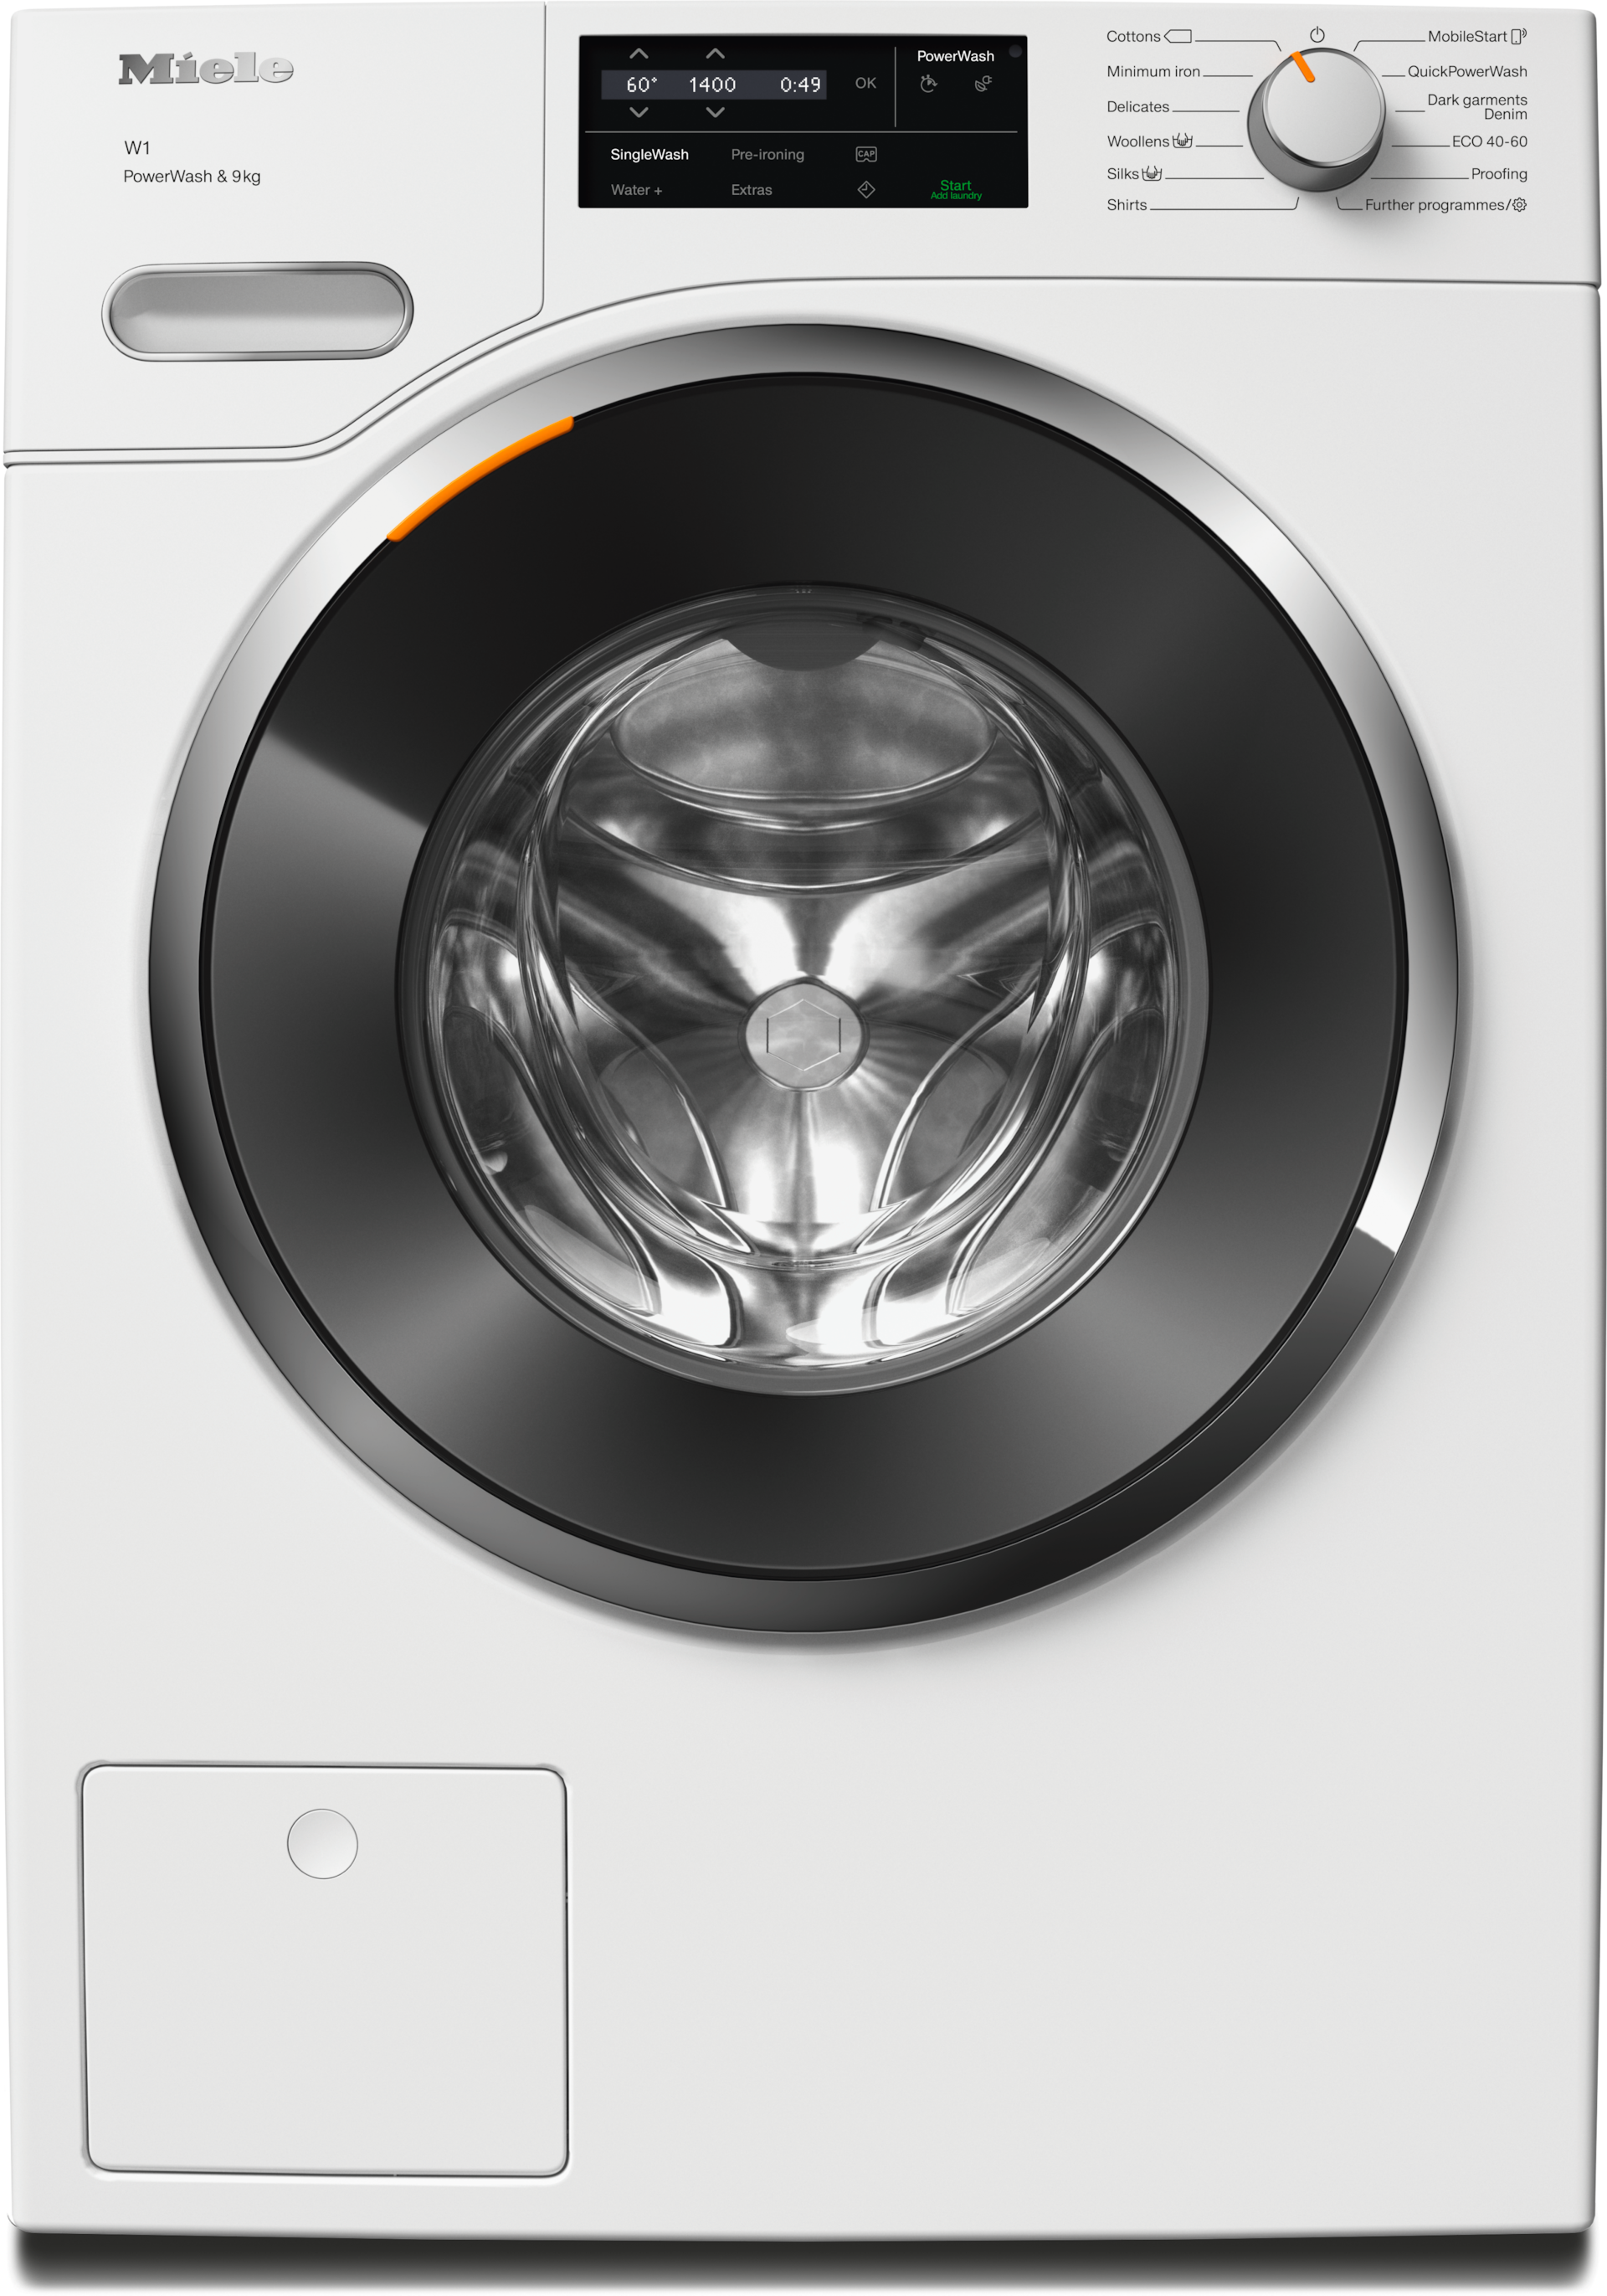 Πλυντήρια ρούχων - WWG360 WCS PWash&9kg Λευκό λωτού - 1